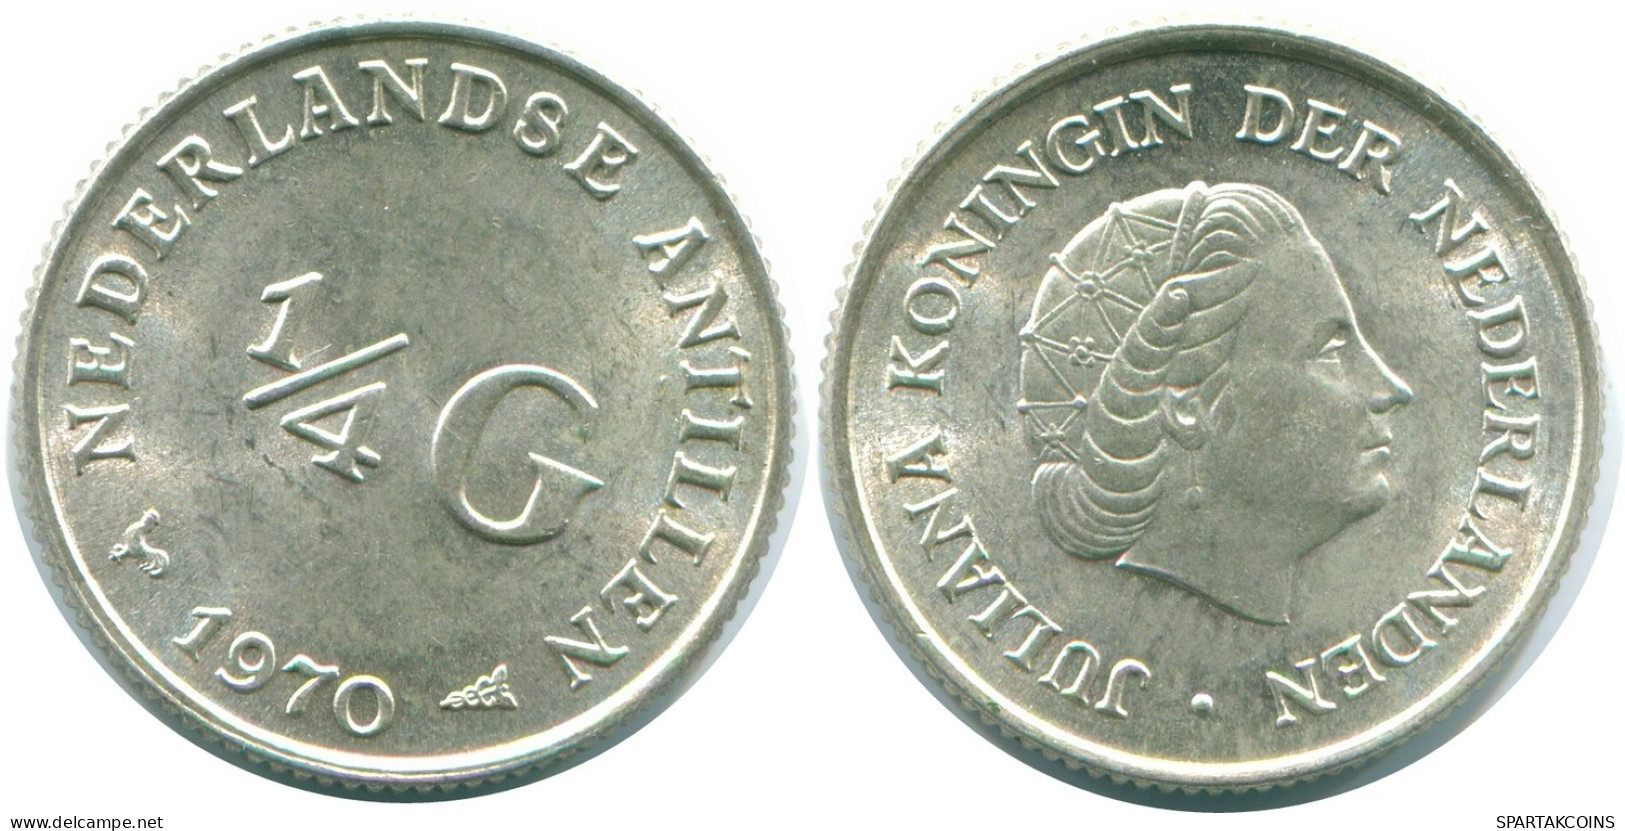 1/4 GULDEN 1970 NIEDERLÄNDISCHE ANTILLEN SILBER Koloniale Münze #NL11624.4.D.A - Antille Olandesi